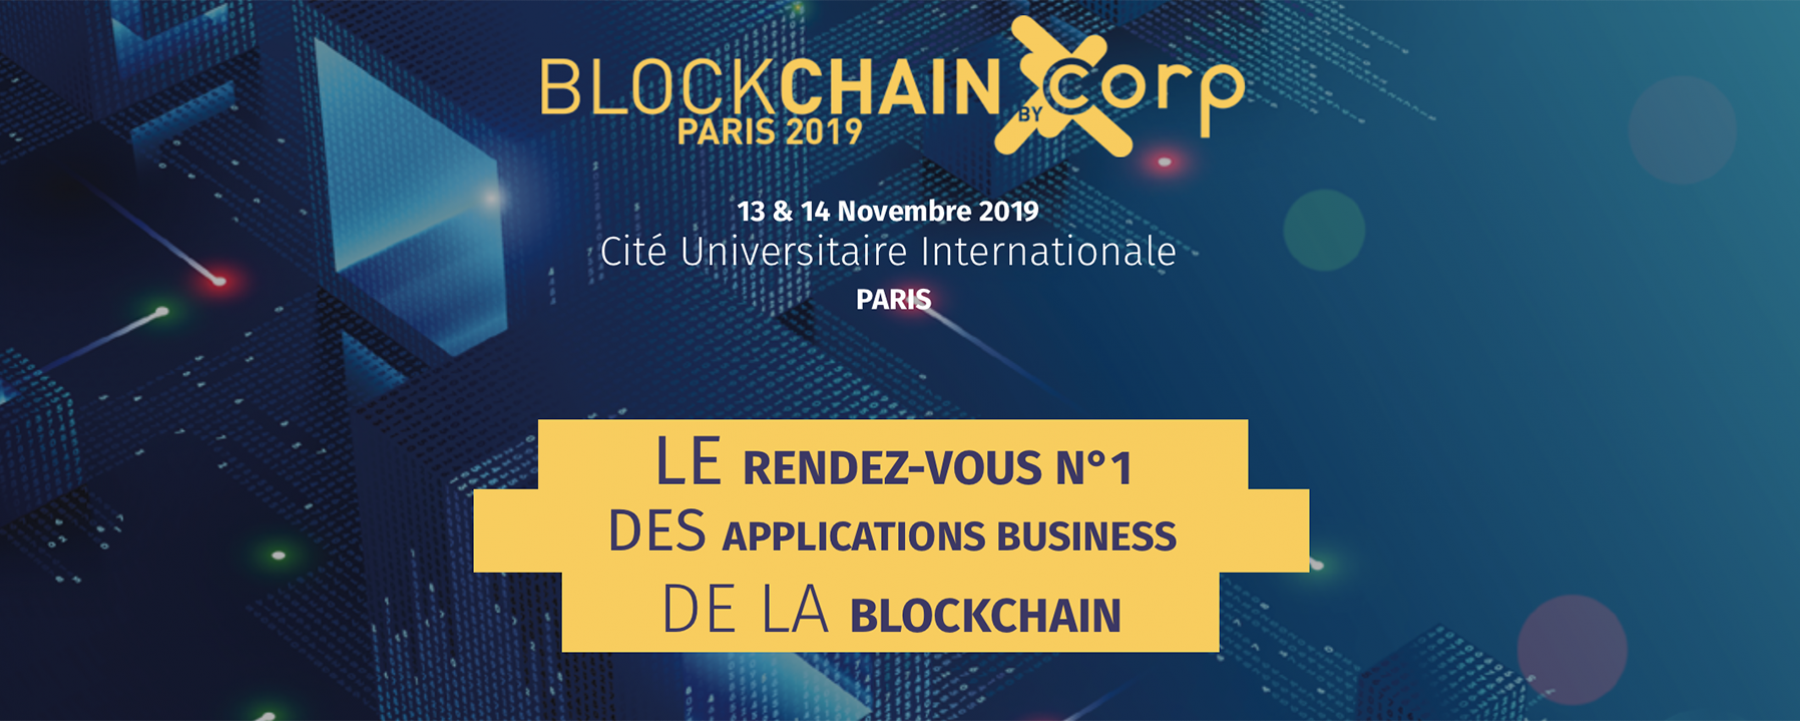 Visuel Blockchain Corp Paris 2019